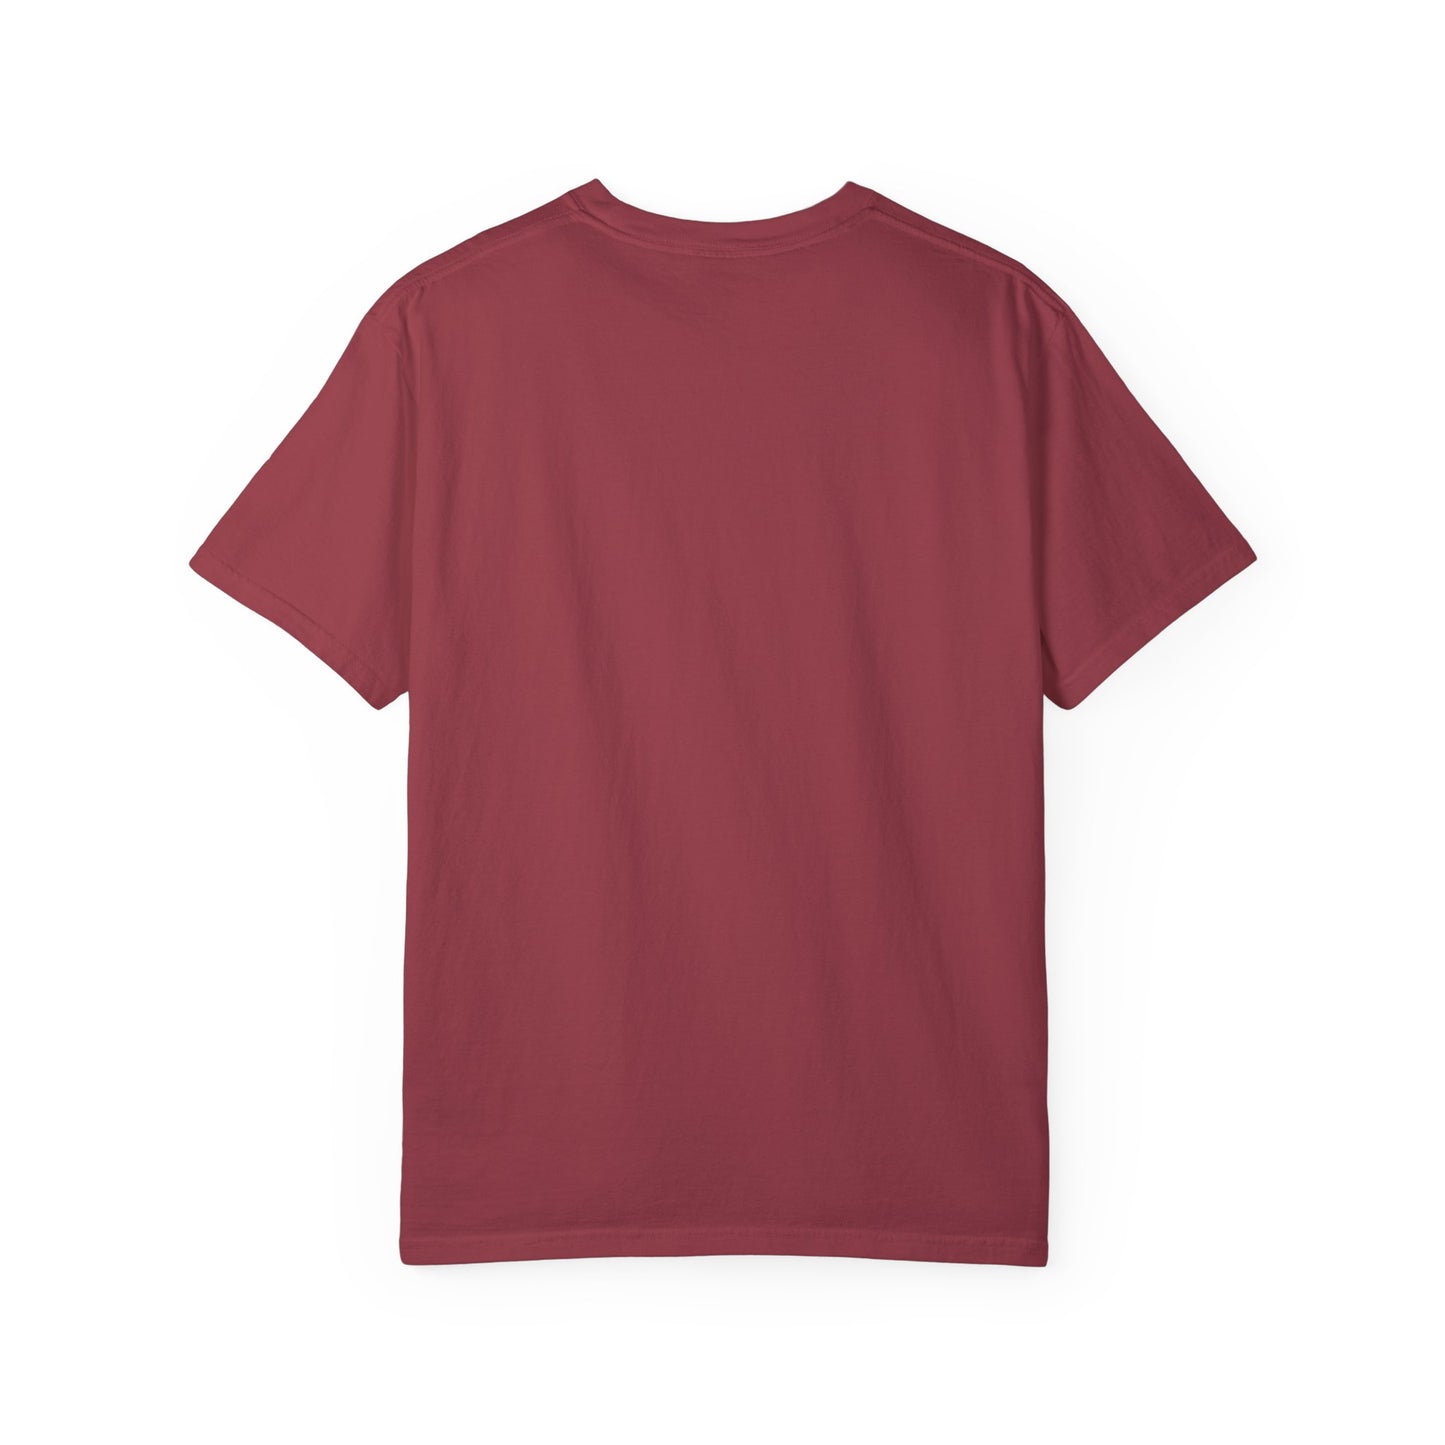 Proud of Grandma 2024 Graduate Unisex Garment-dyed T-shirt Cotton Funny Humorous Graphic Soft Premium Unisex Men Women Chili T-shirt Birthday Gift-34